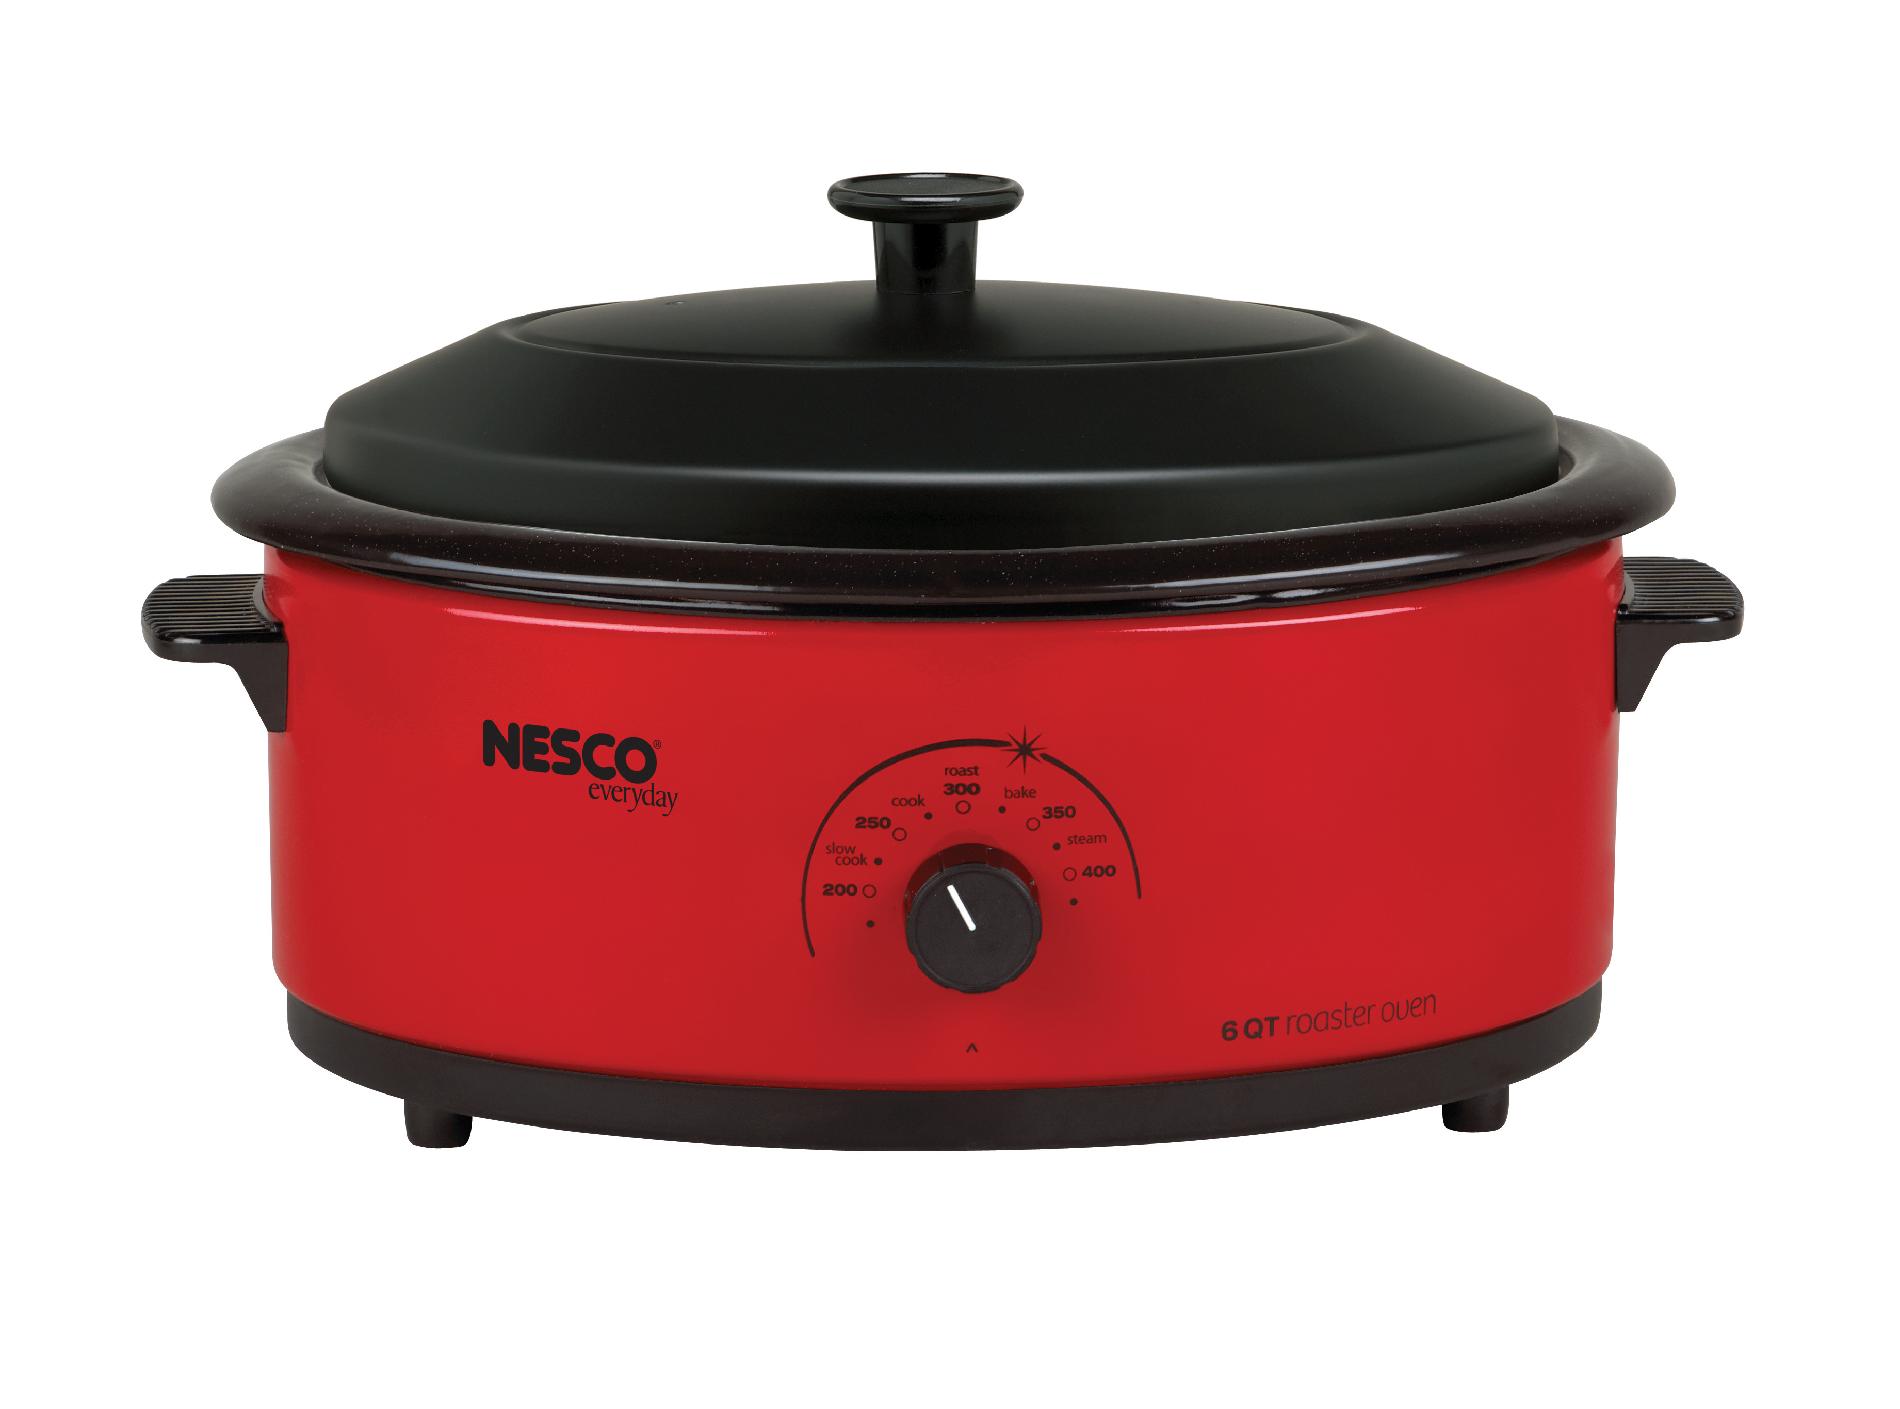 Nesco 4816-12 6 Qt Roaster Oven Red/Metal Lid